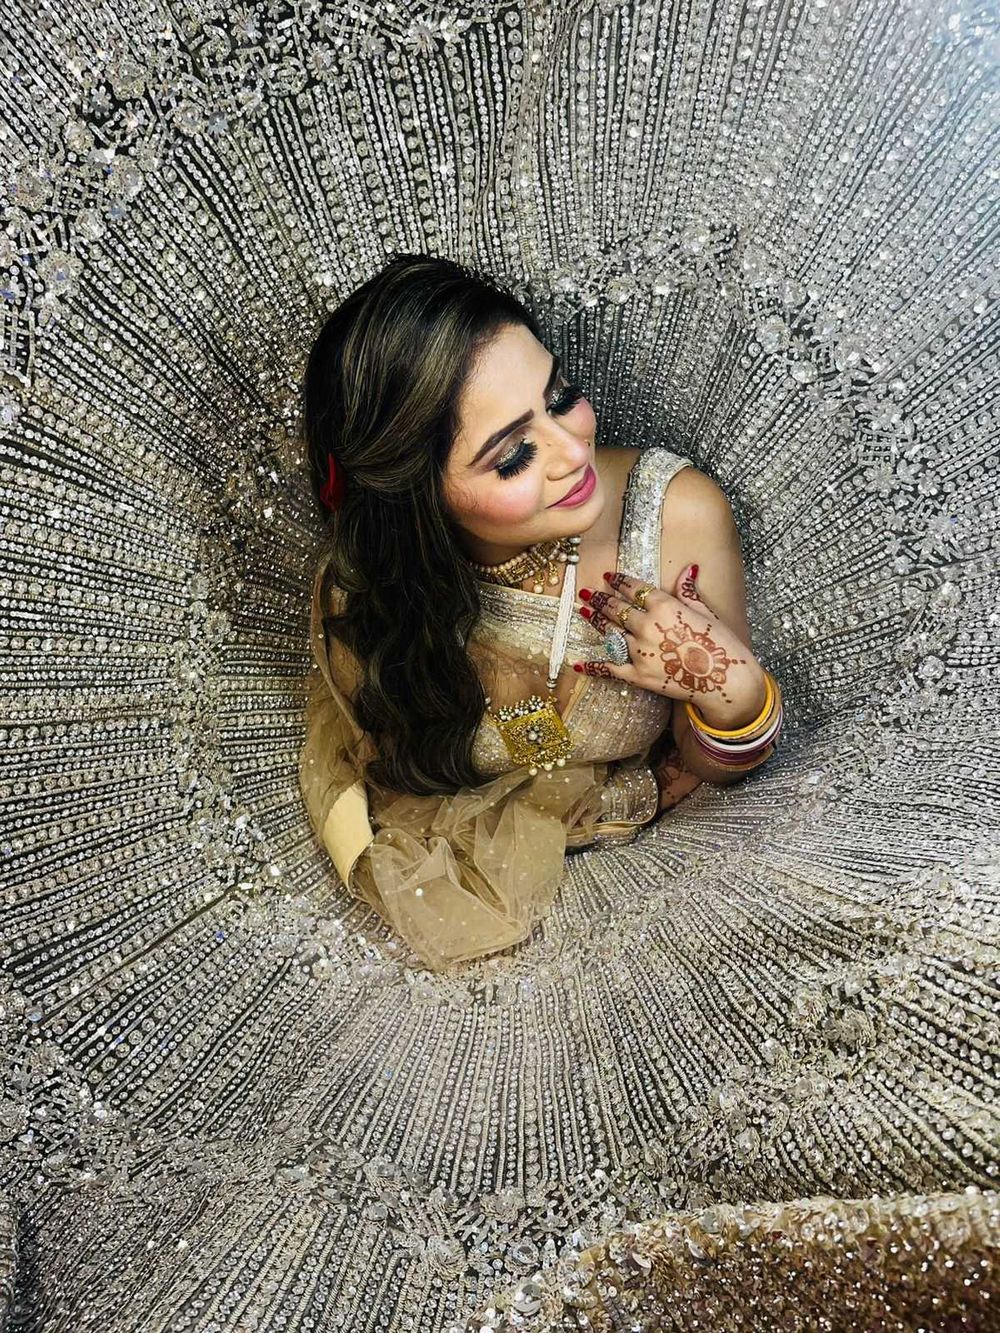 Photo By Tek Chand Arjit Goel - Bridal Wear